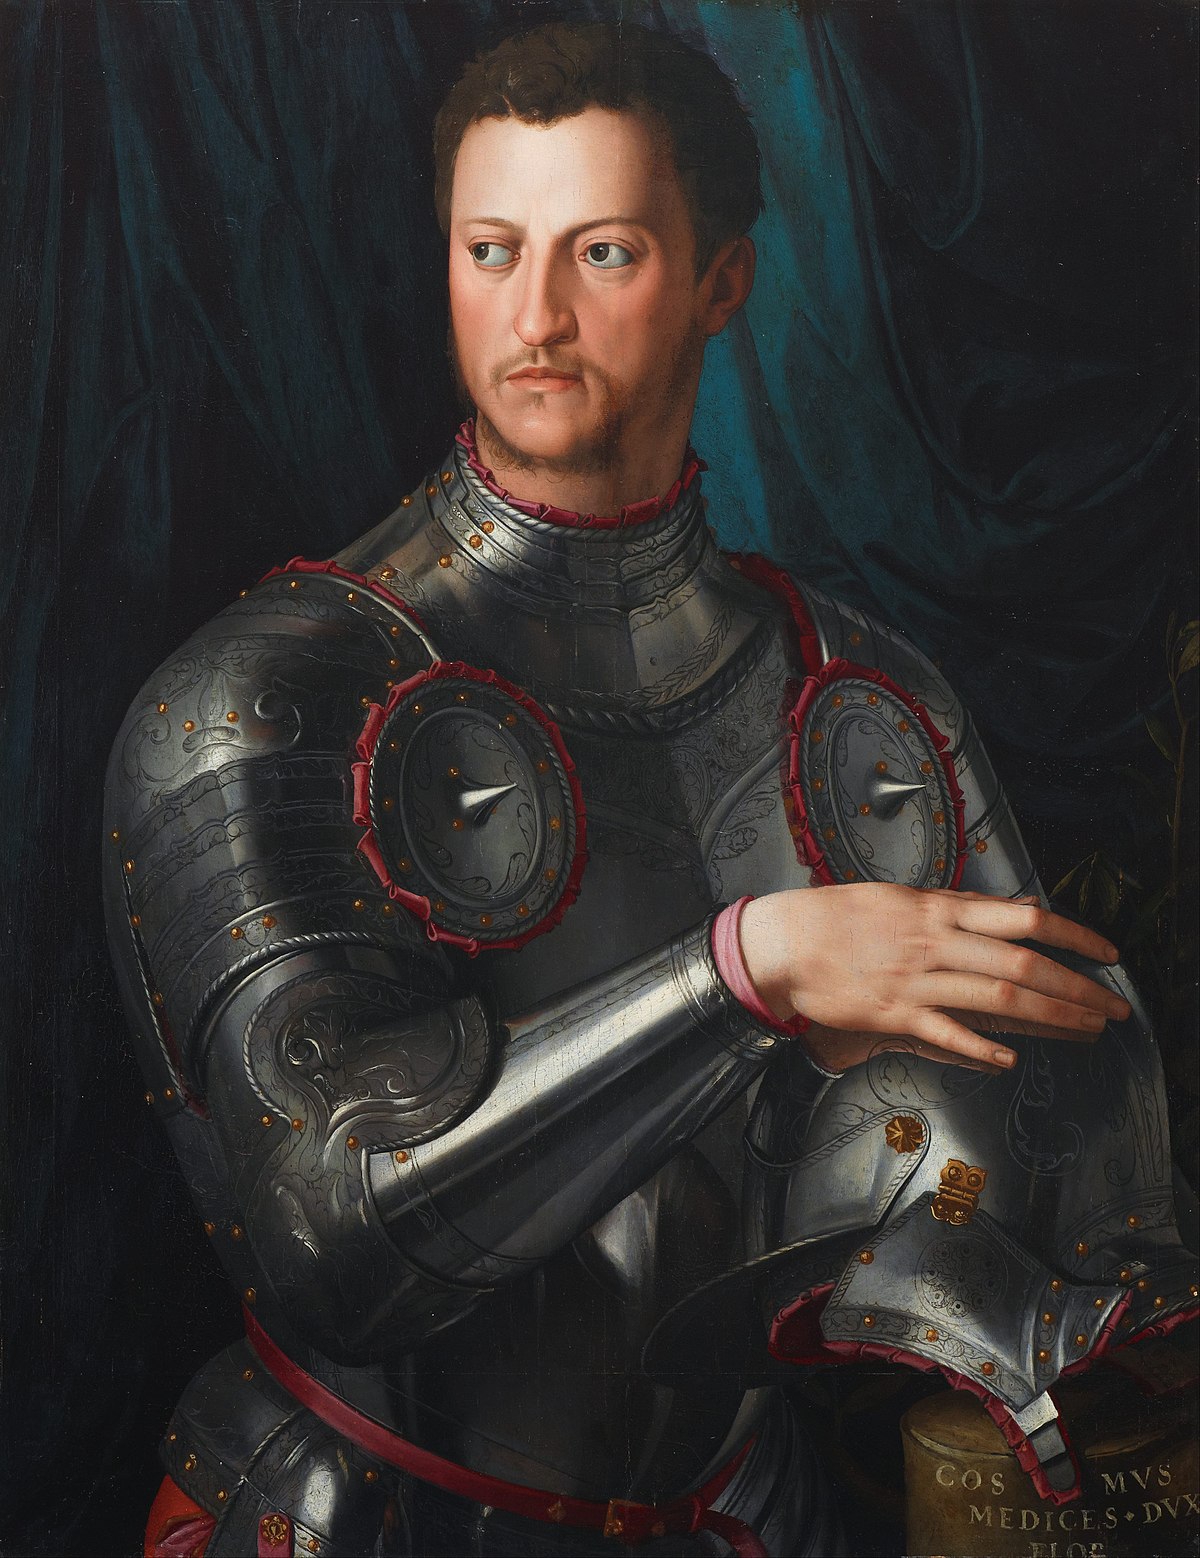  Cosimo de Medici, biografi dan sejarah